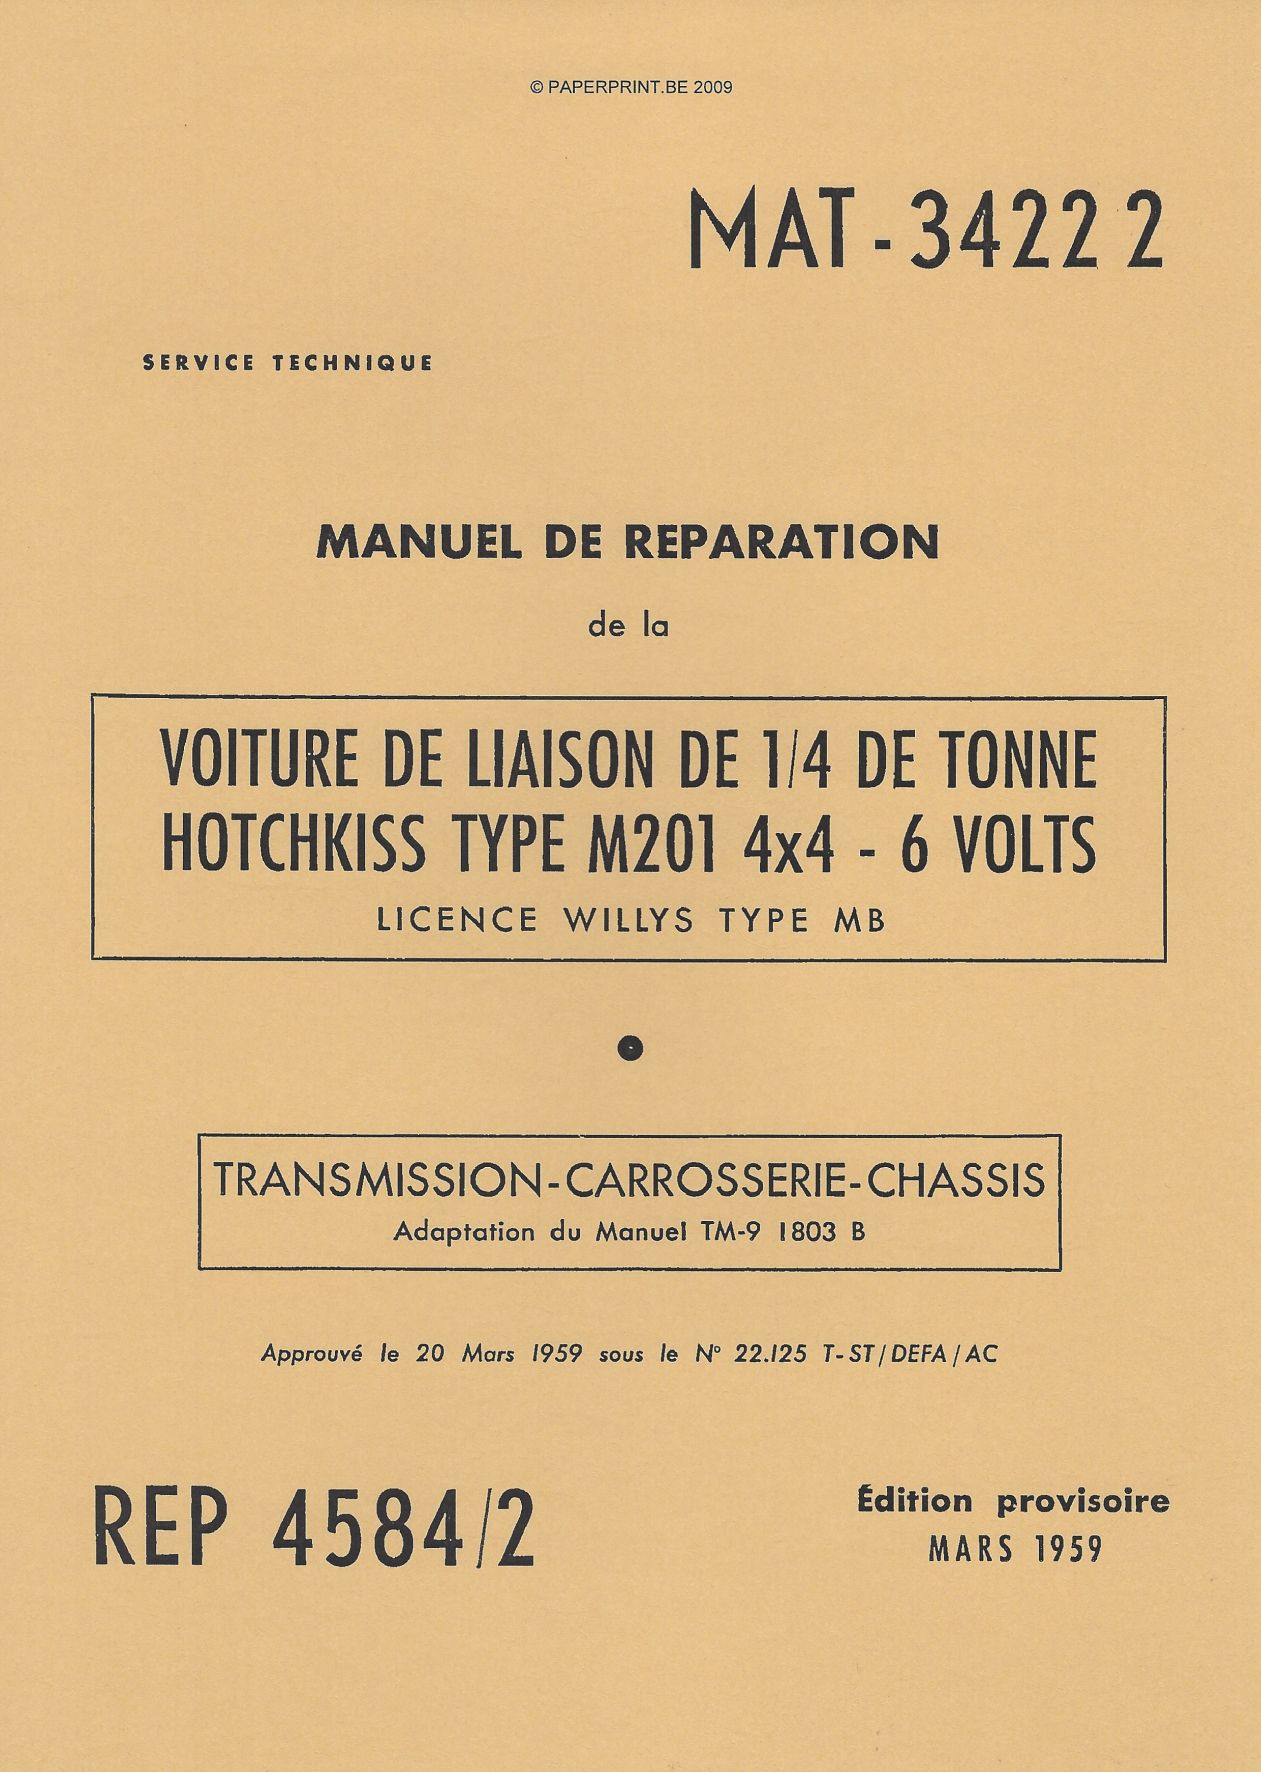 TM 9-1803B FR ¼ DE TONNE HOTCHKISS TYPE M201 4x4 - 6 VOLTS TRANSMISSION - CARROSSERIE - CHASSIS